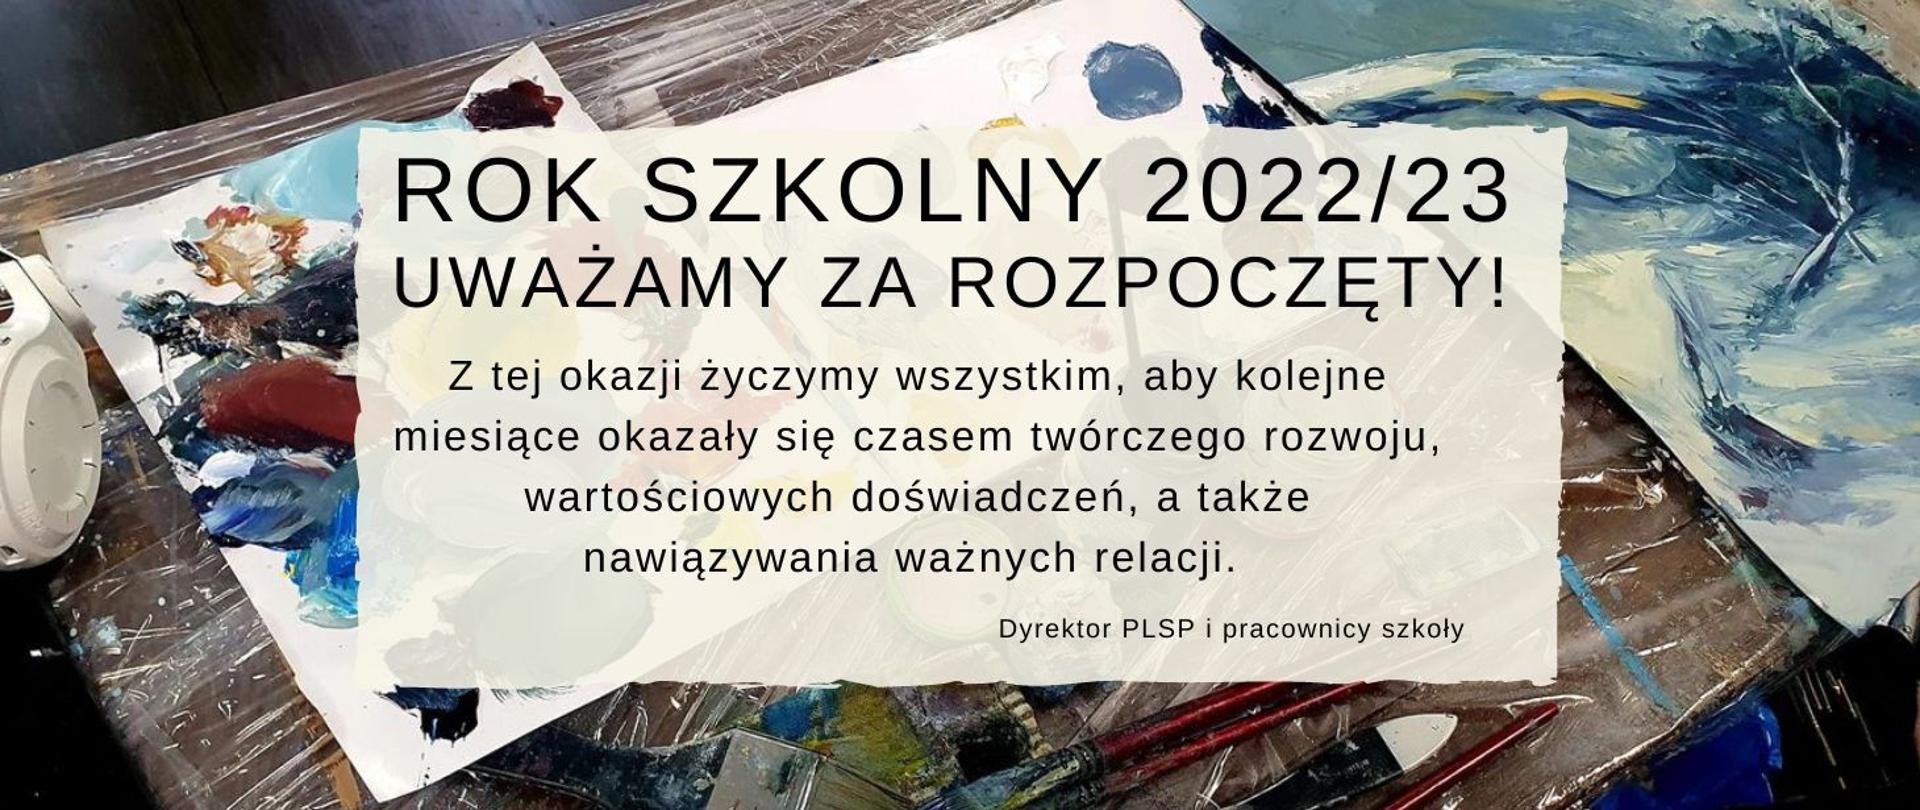 na tle ilustrującym malarską paletę ozdobny napis: Rok szkolny 2022/23 uważamy za rozpoczęty!